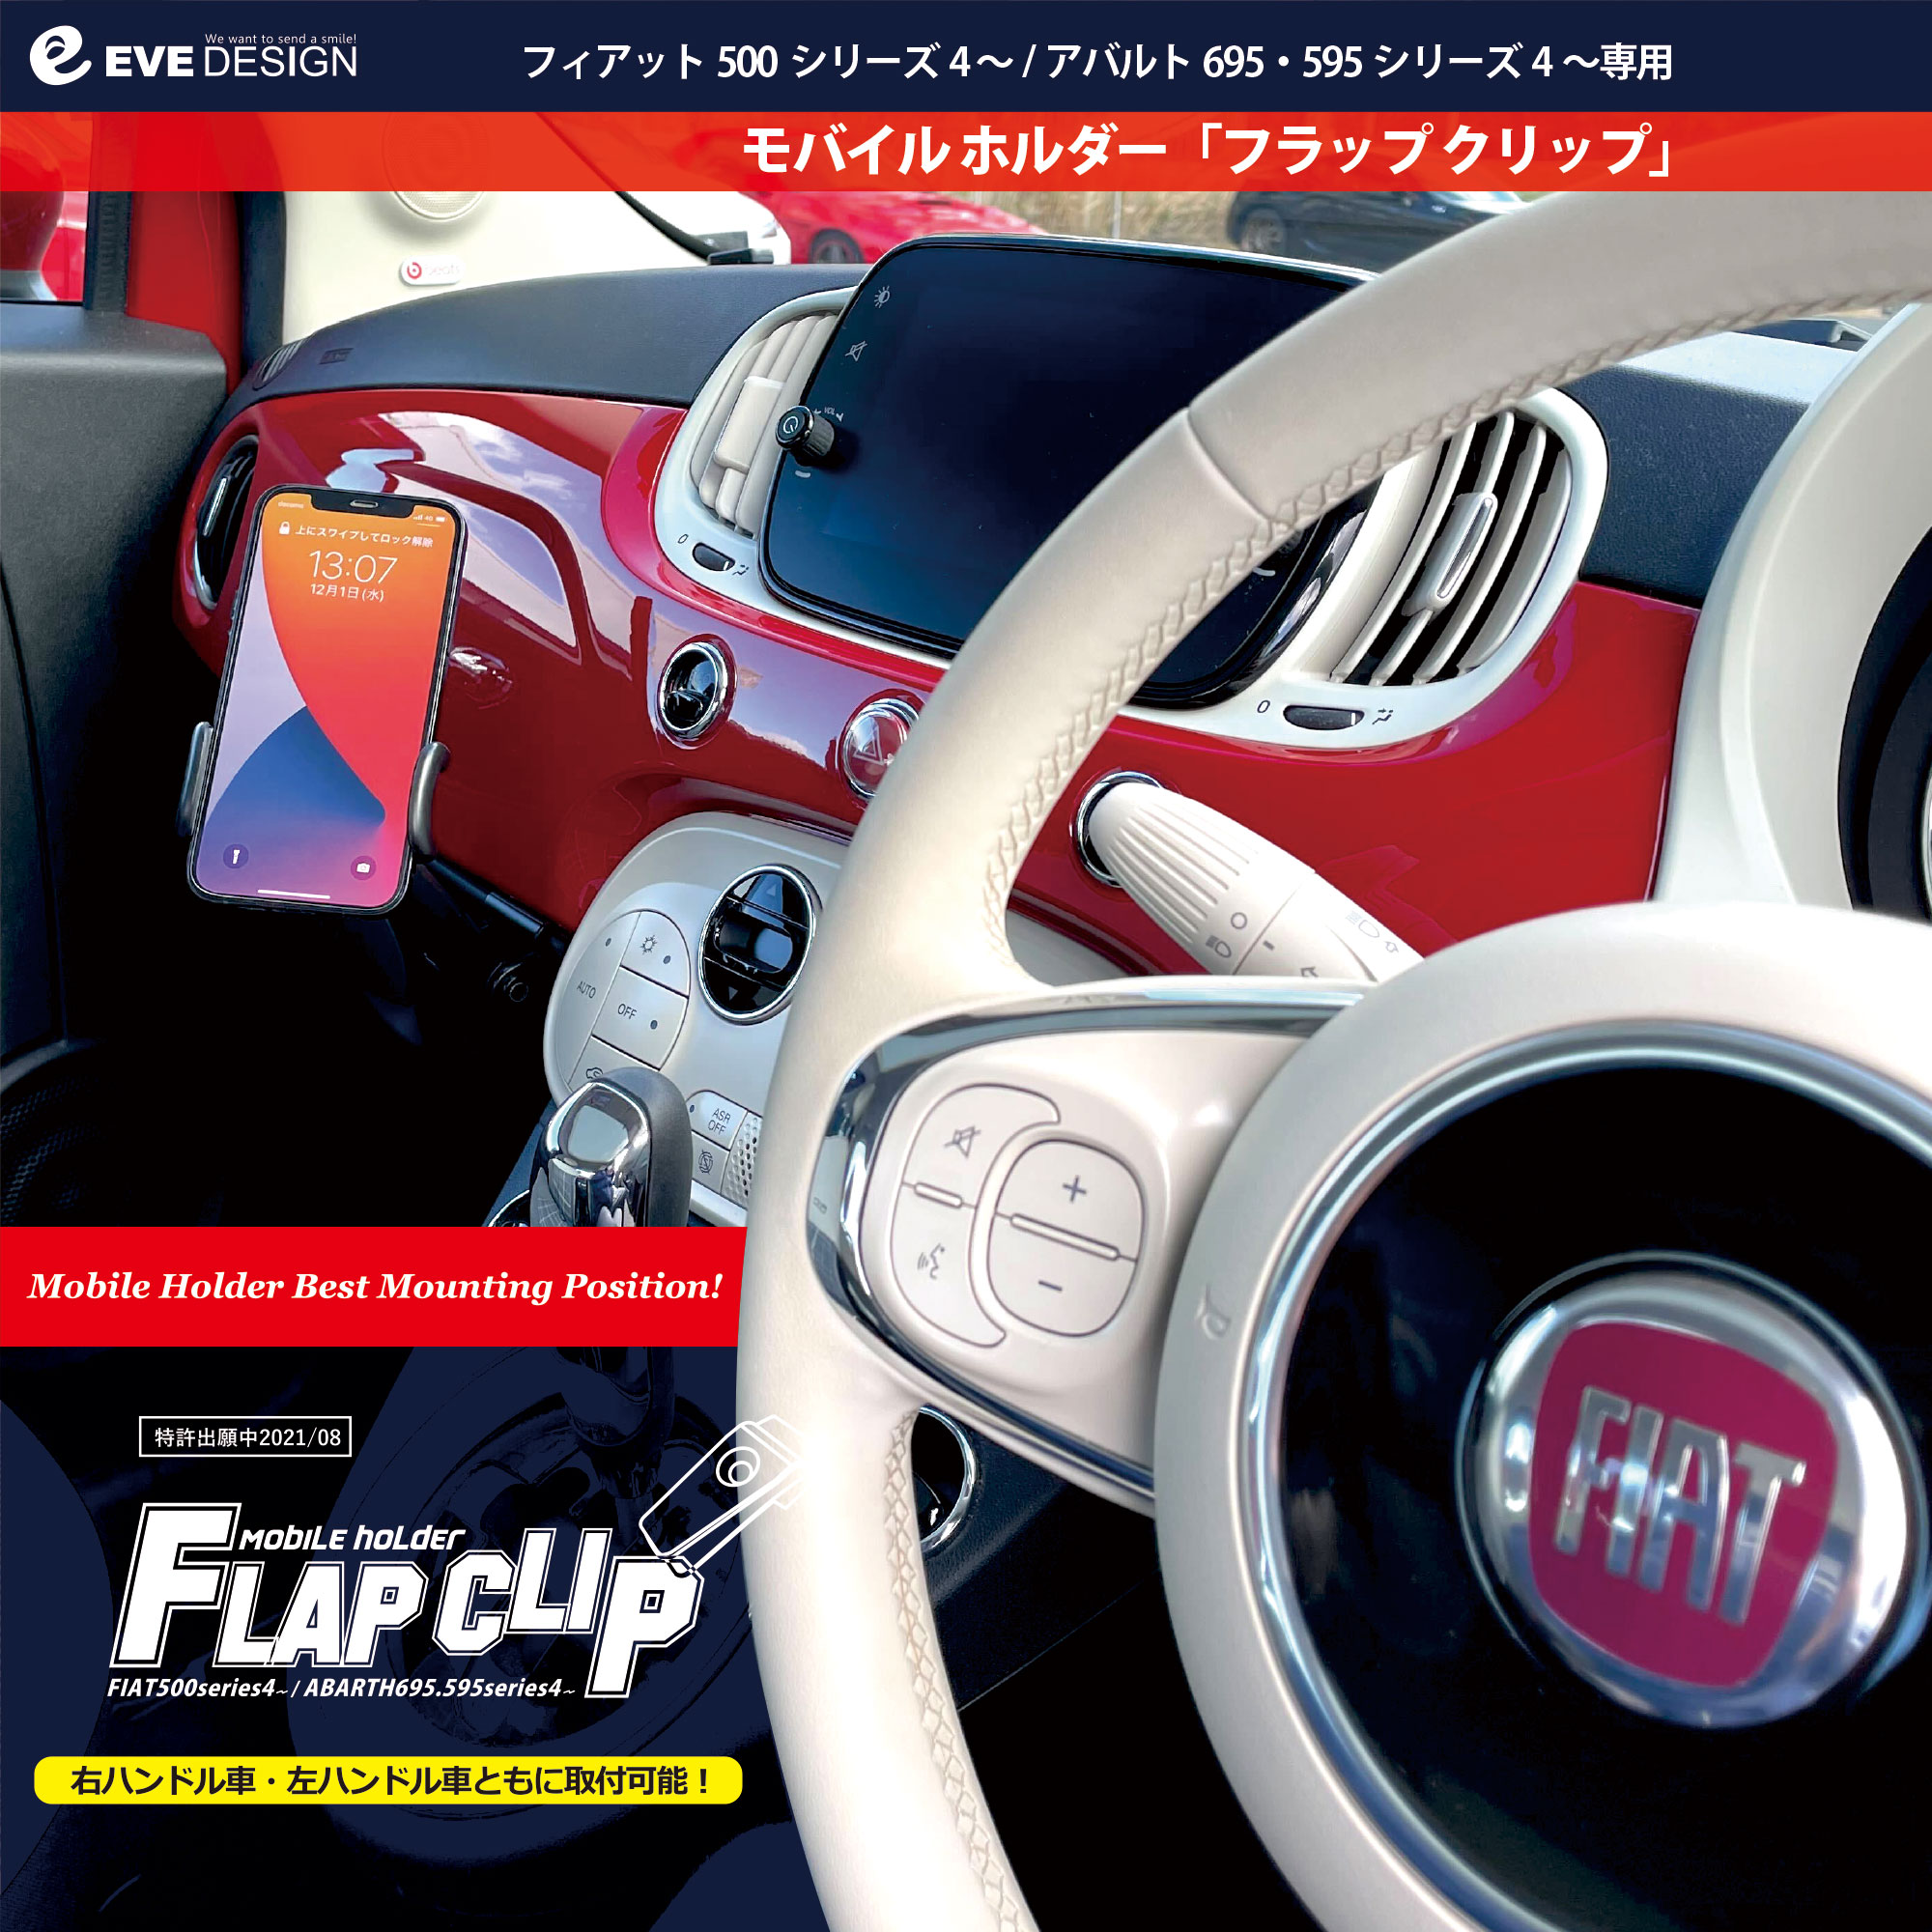 正規品 フィアット500 FIAT500 シリーズ4〜専用 モバイルホルダー フラップクリップ MHF-M1 イブ